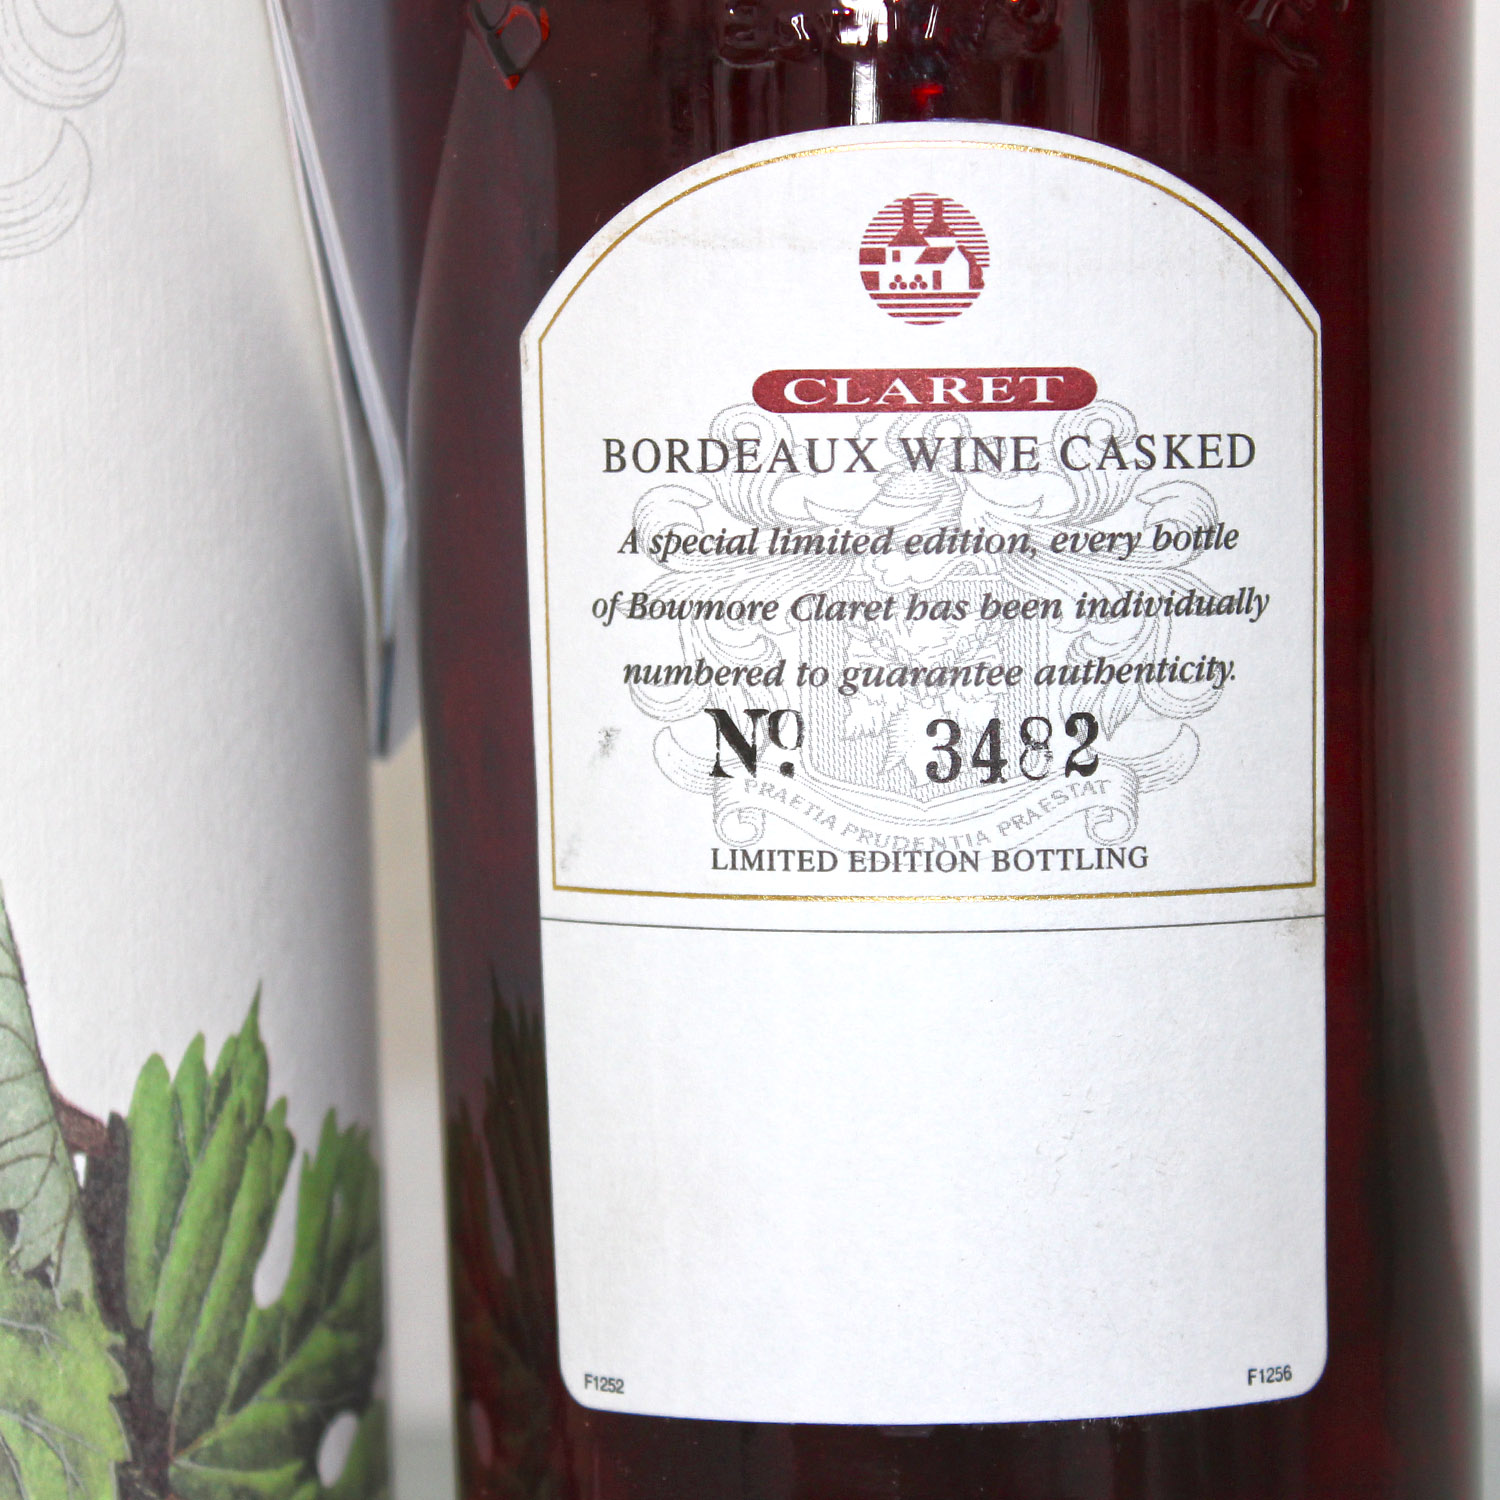 Bowmore Claret Bordeaux Wine Casked Scotch Whisky Label Back